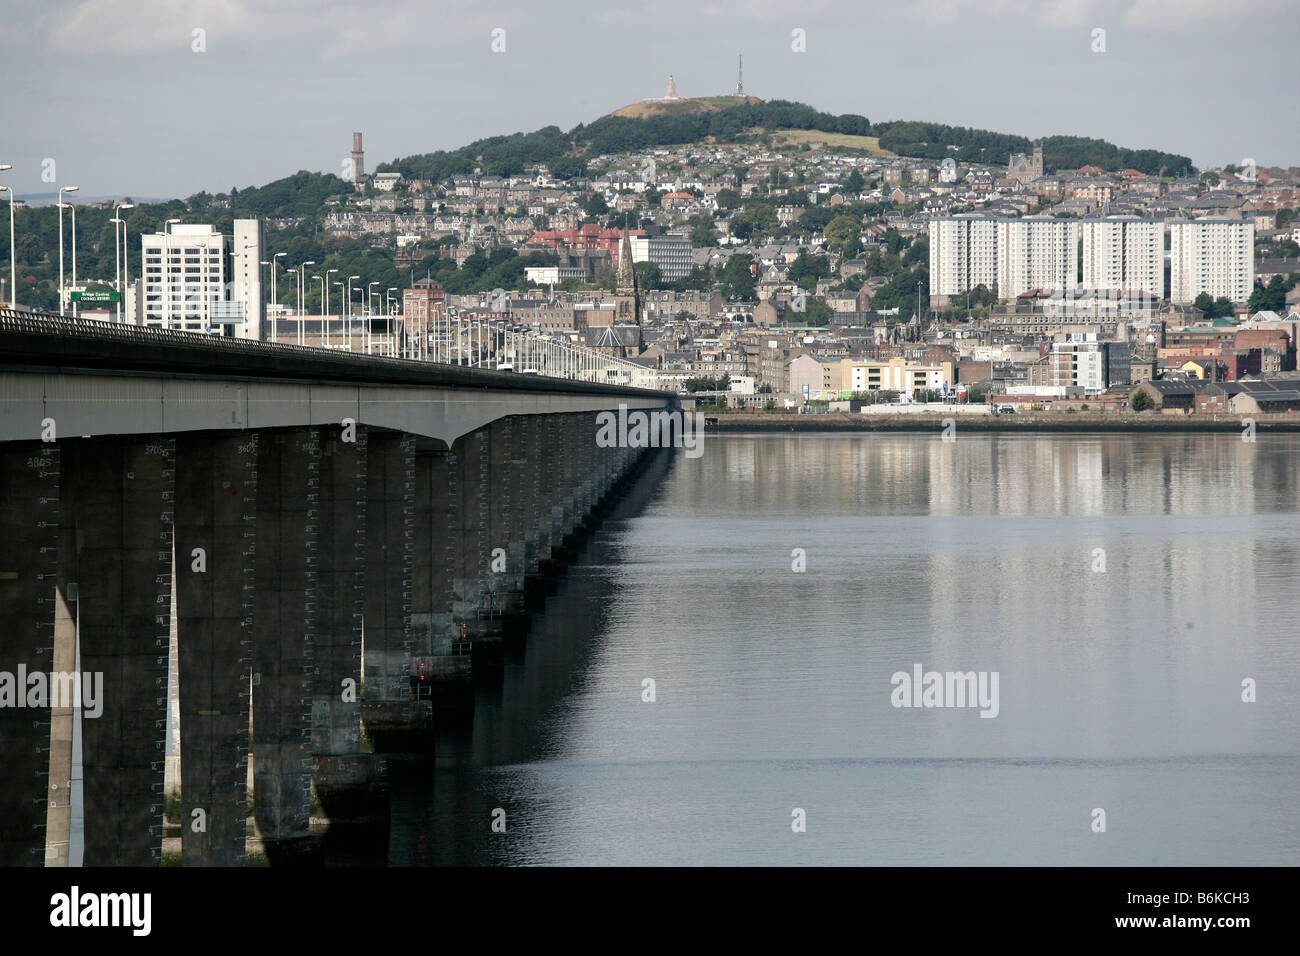 Stadt von Dundee, Schottland. Blick von Nord-westlich von William Fairhurst entworfen Tay Straßenbrücke über die Mündung des Flusses Tay. Stockfoto